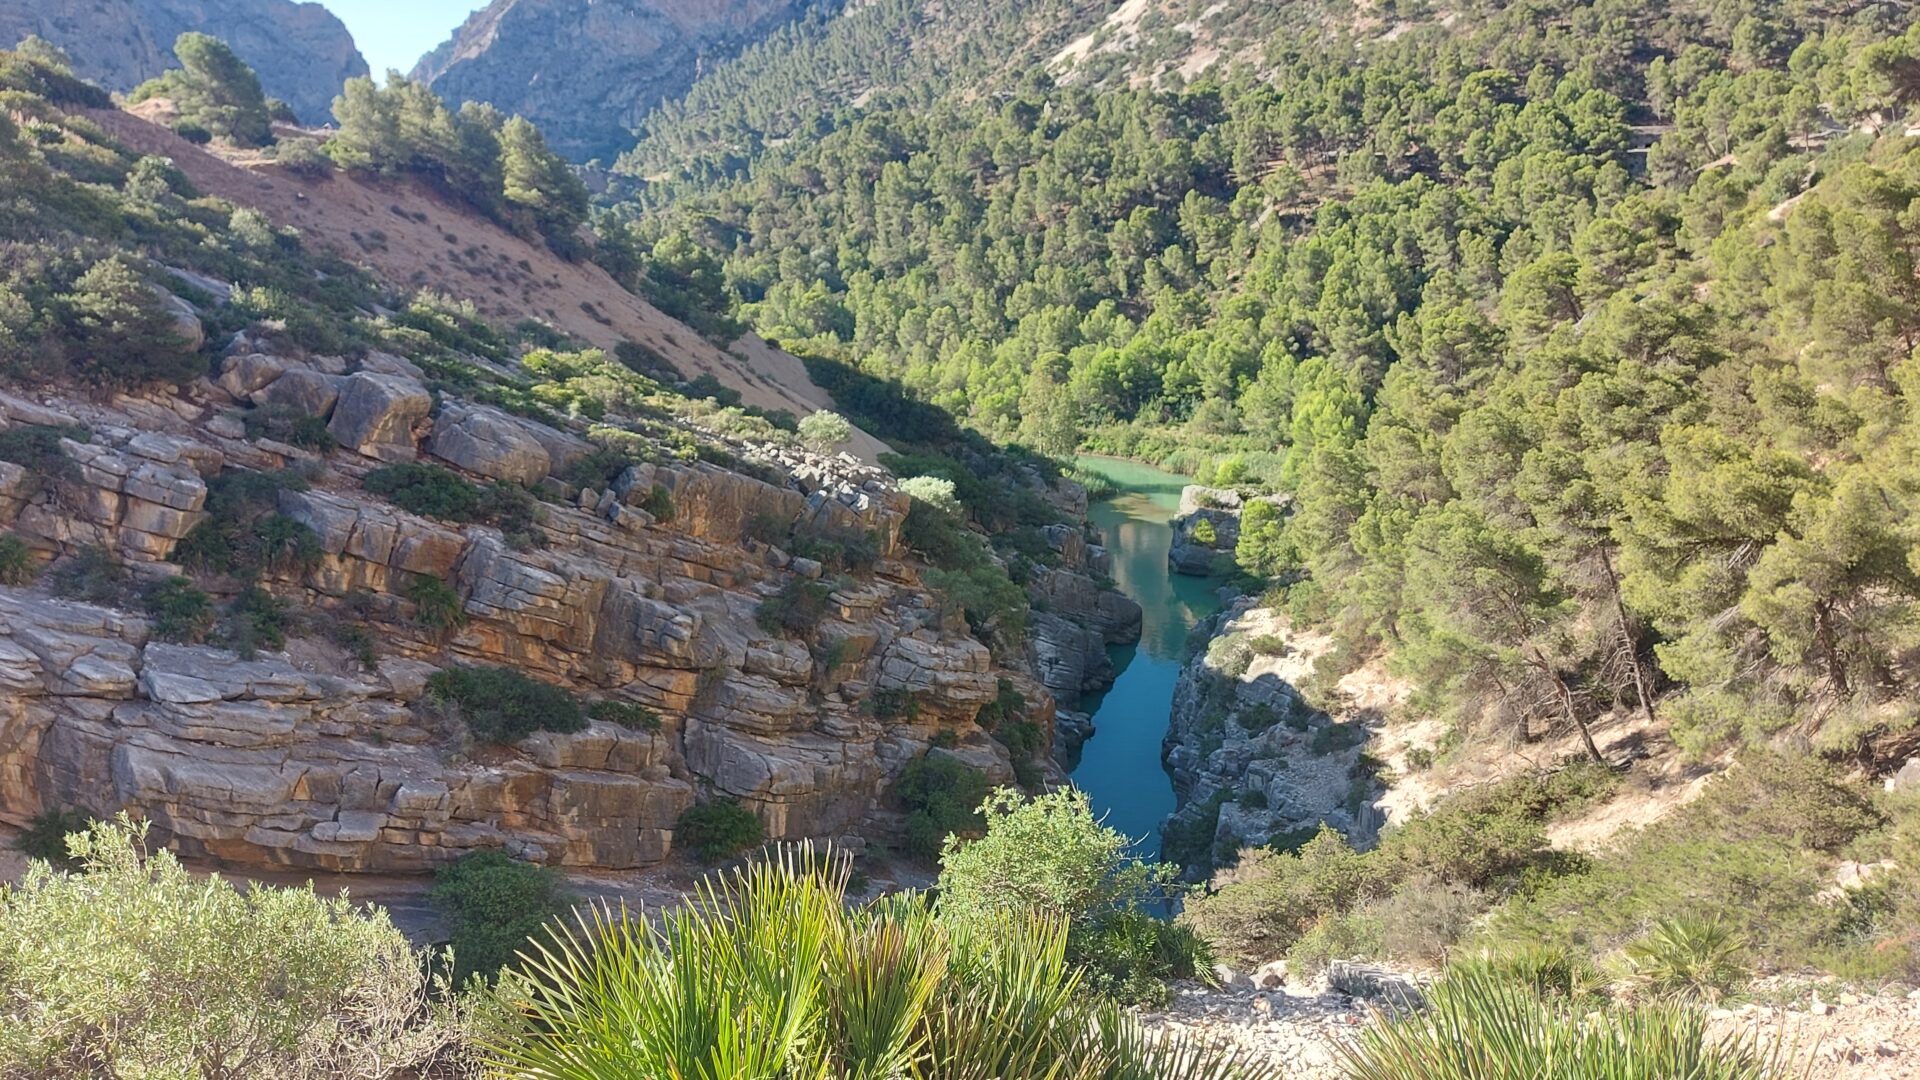 Caminito del Rey w Andaluzji - gdy chcesz przejść się Królewską Ścieżką